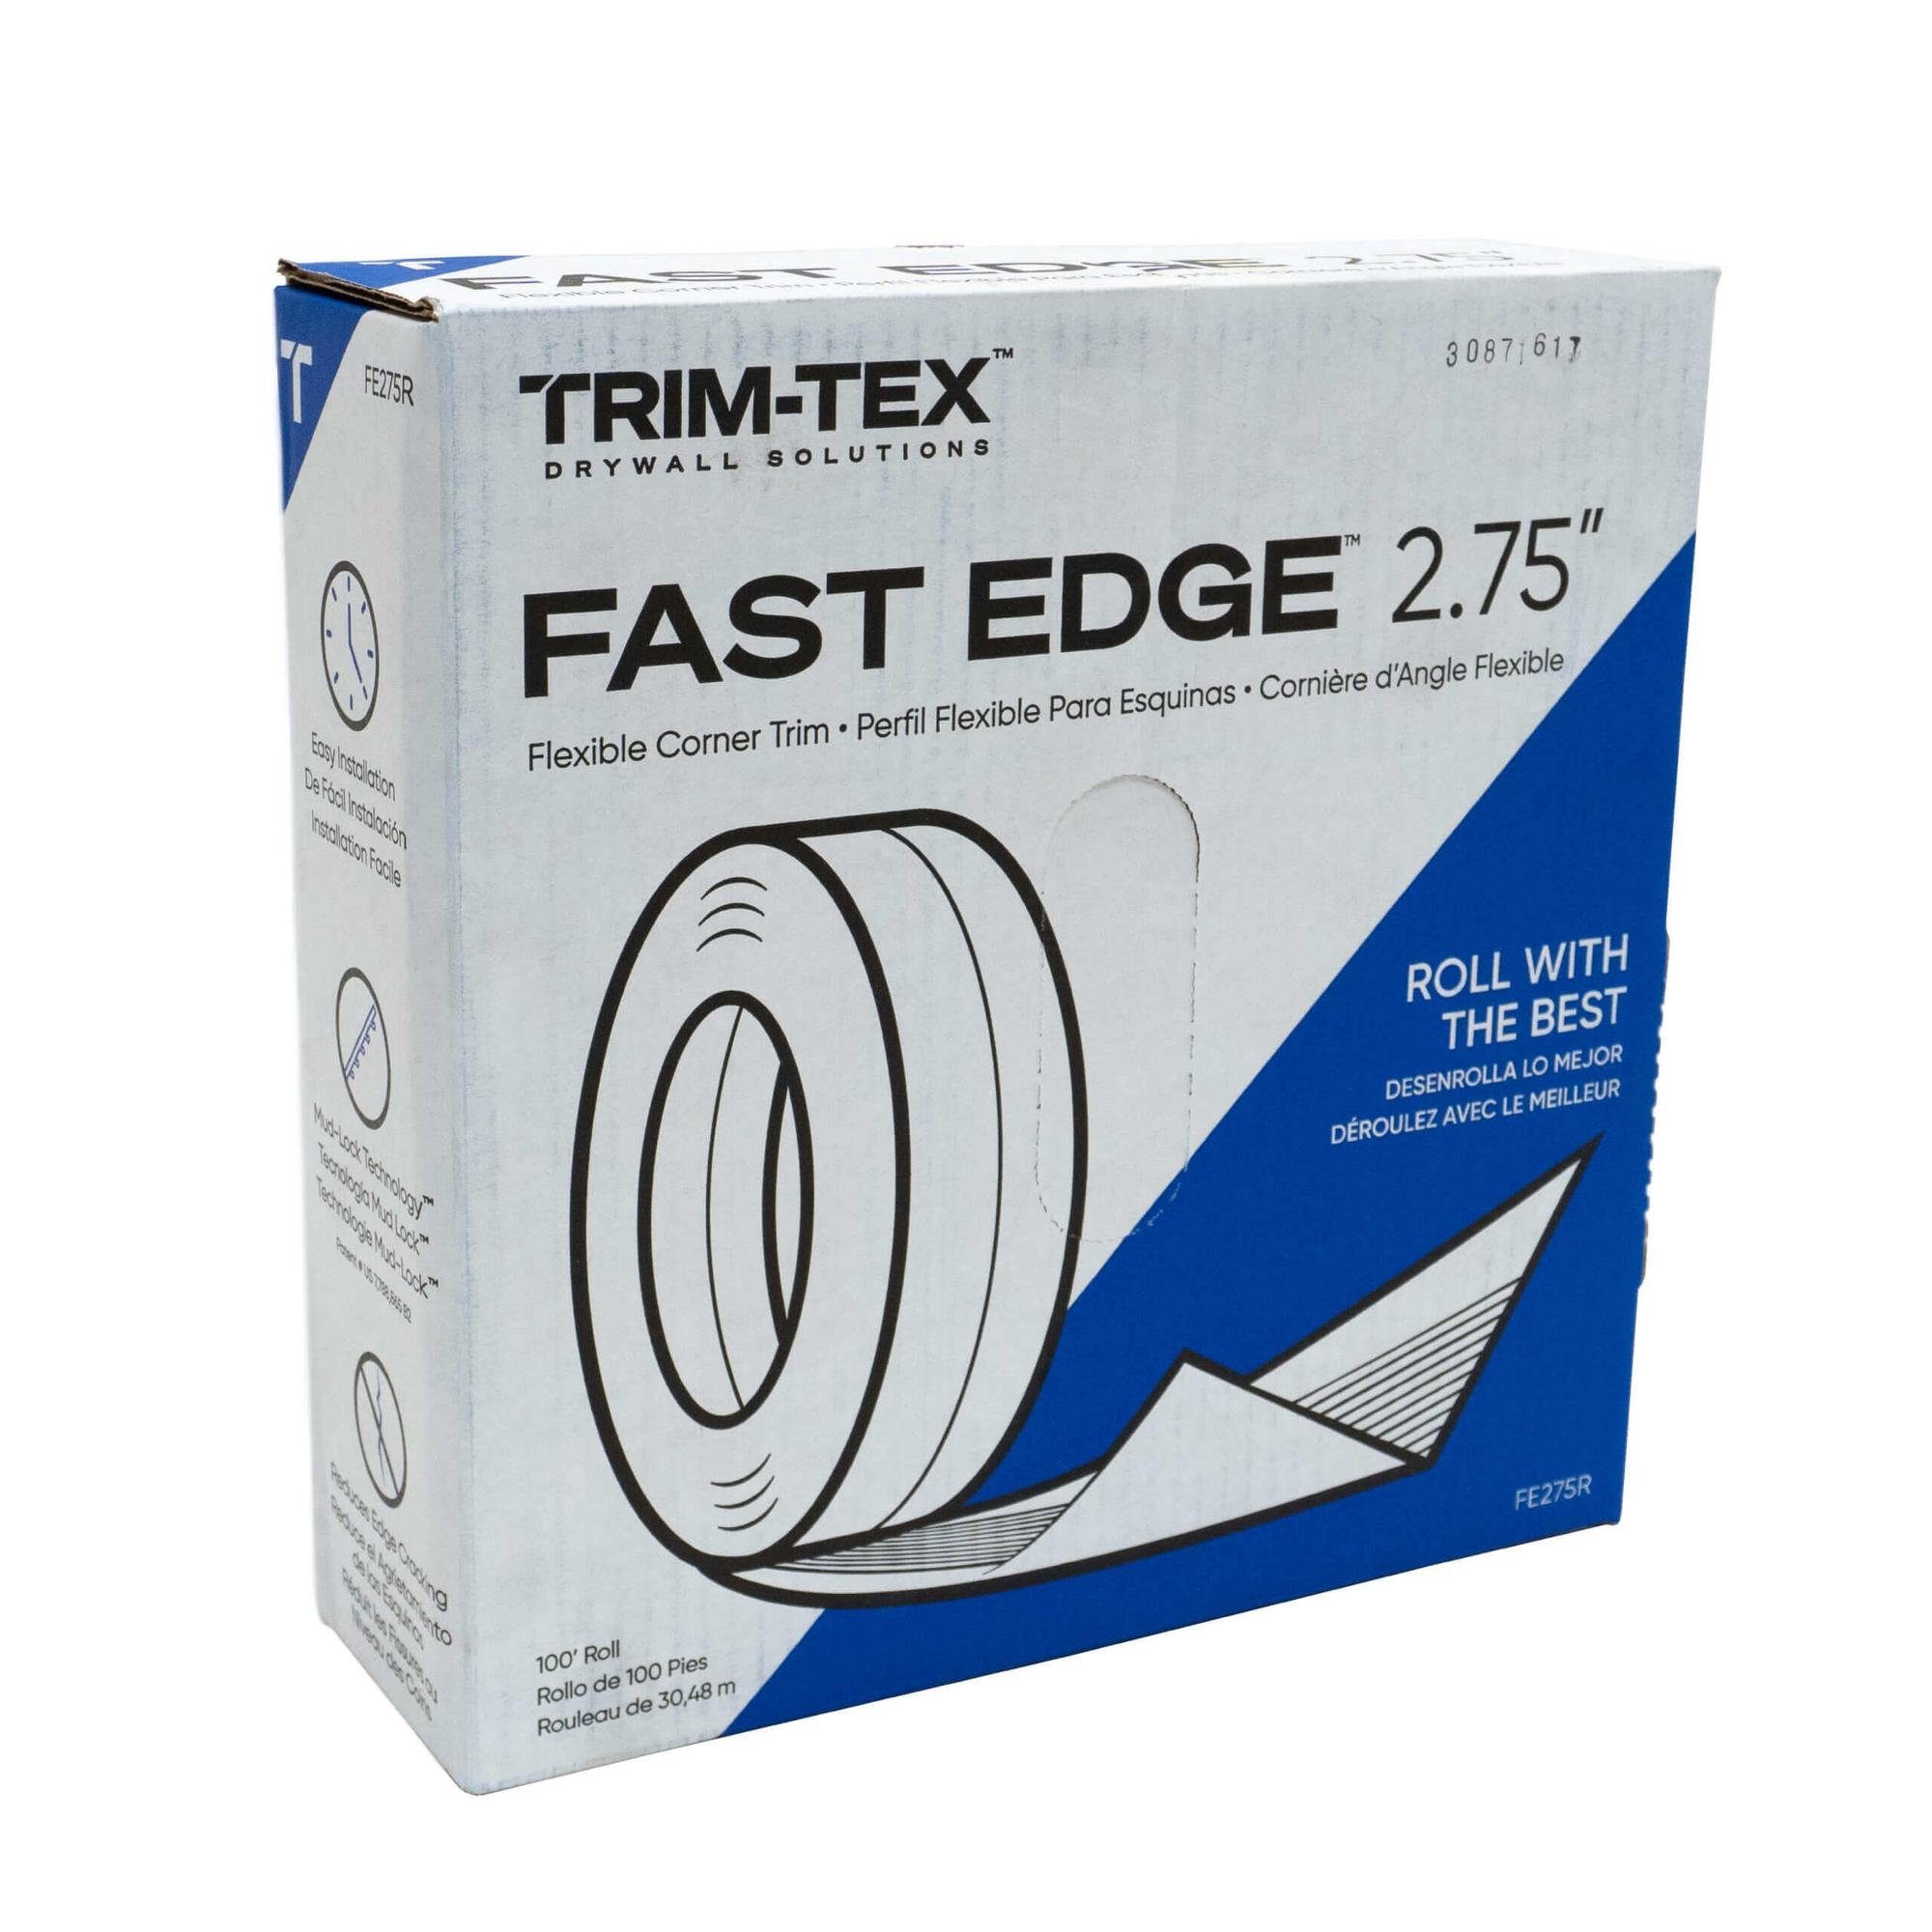 Trim-Tex Profil (Kantenprofil 30,4m Rolle Trockenbau, Weiß Eckschutzprofil, 1-St), Weiß hoher Kantenschutz, Dry Wall Tools